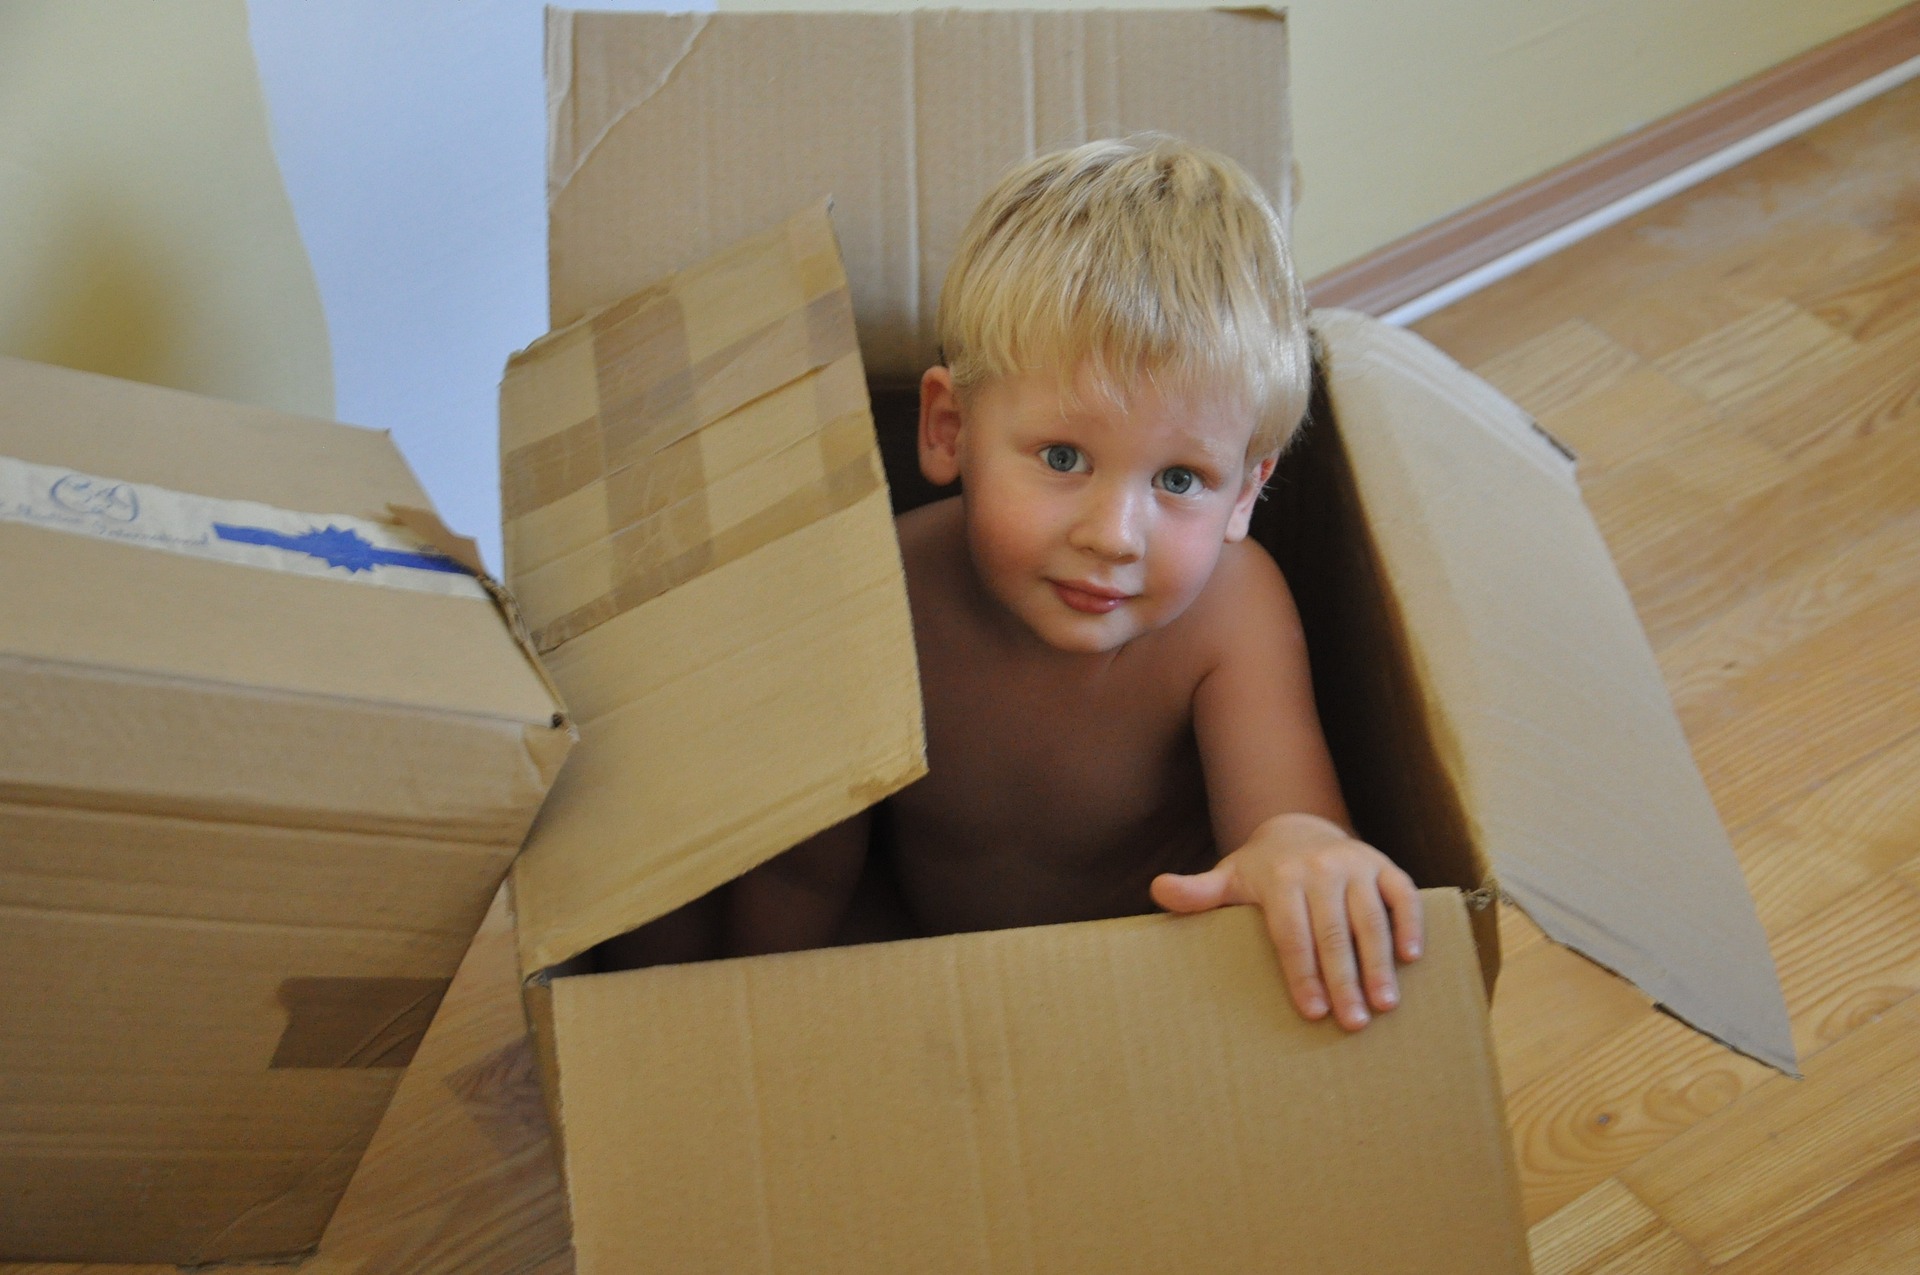 Fabriquer une boite de permanence de l'objet en carton pour bébé